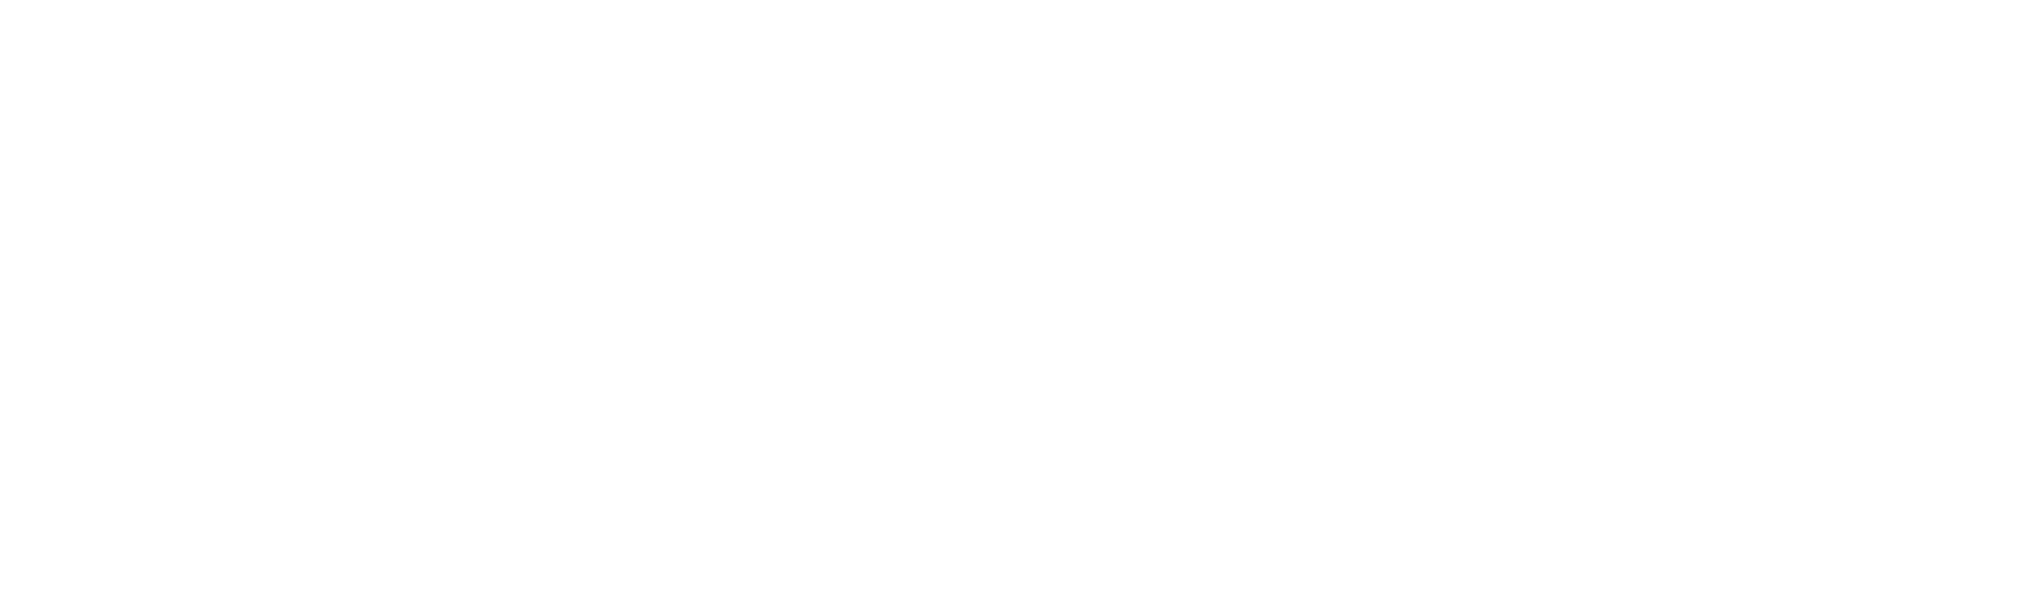 ISOQAR z akredytacją ISO 9001:2015 i ISO 14001:2015